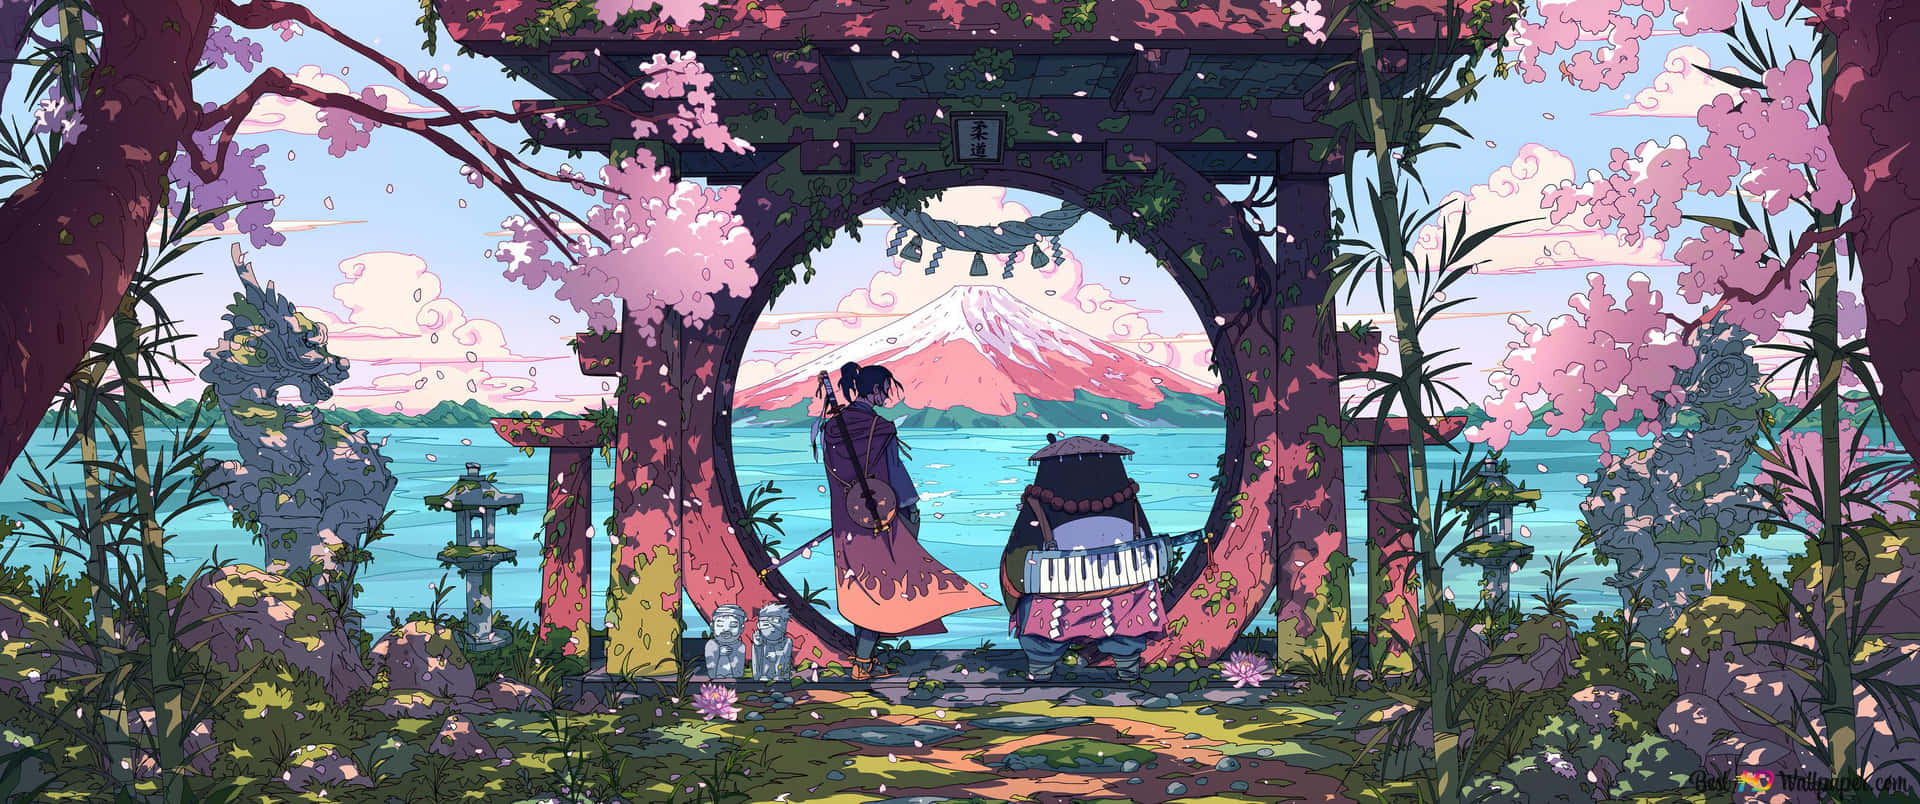 75 Ghibli Wallpaper  WallpaperSafari